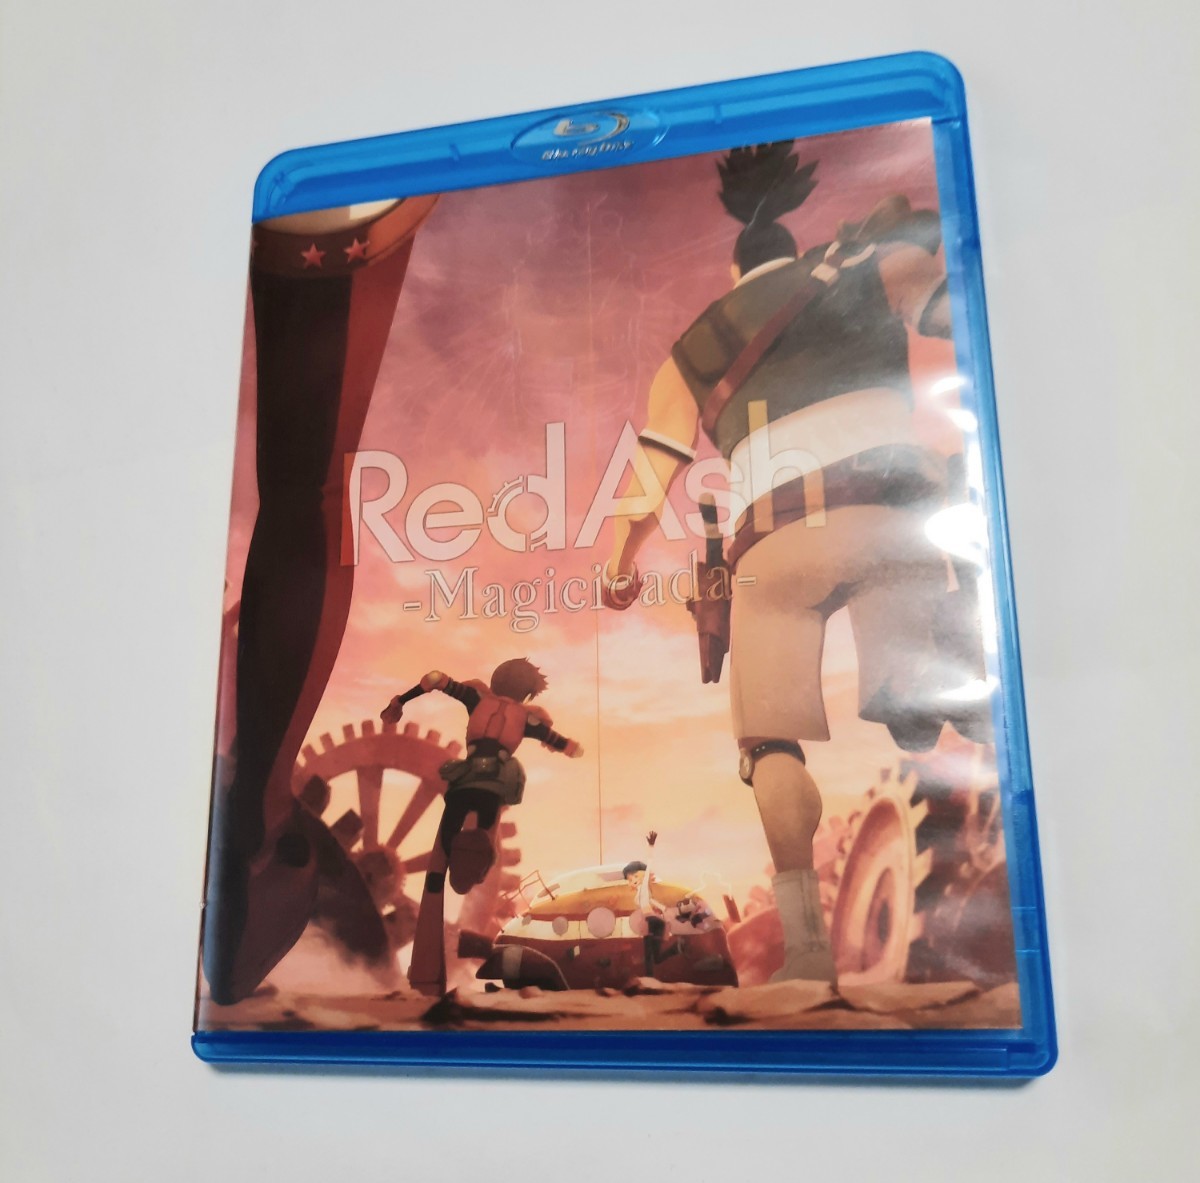 Red Ash -Magicicada- ブルーレイ Blu-ray STUDIO4℃ クラファン 0614